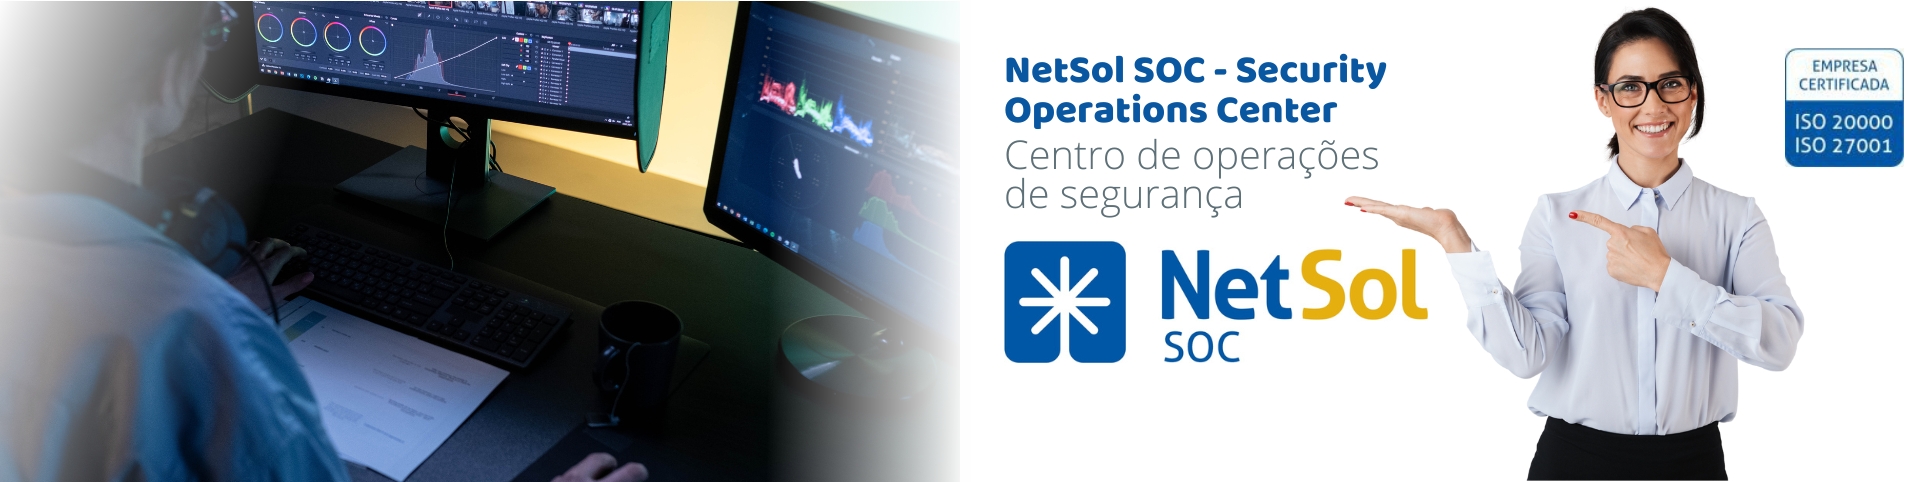 NetSol_SOC